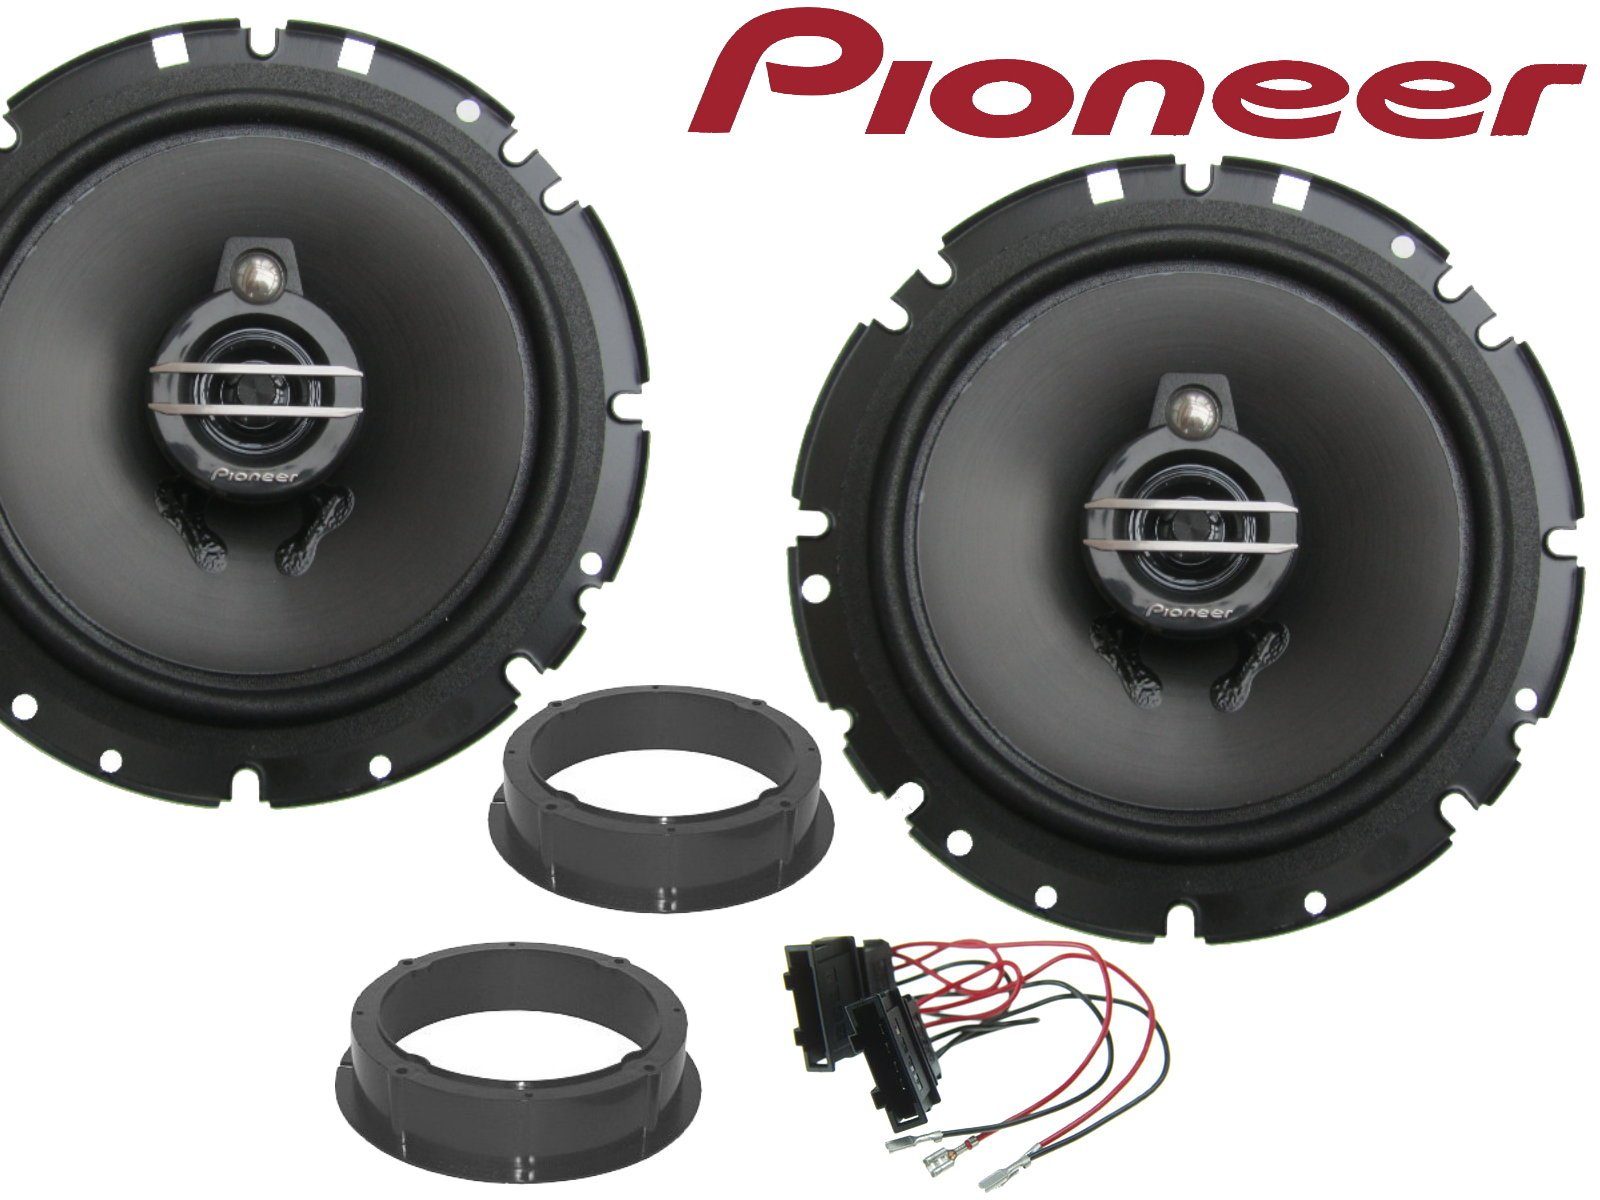 DSX Pioneer 3wege passend für VW Passat B5 3B 3BG Laut Auto-Lautsprecher (40 W) | Auto-Lautsprecher